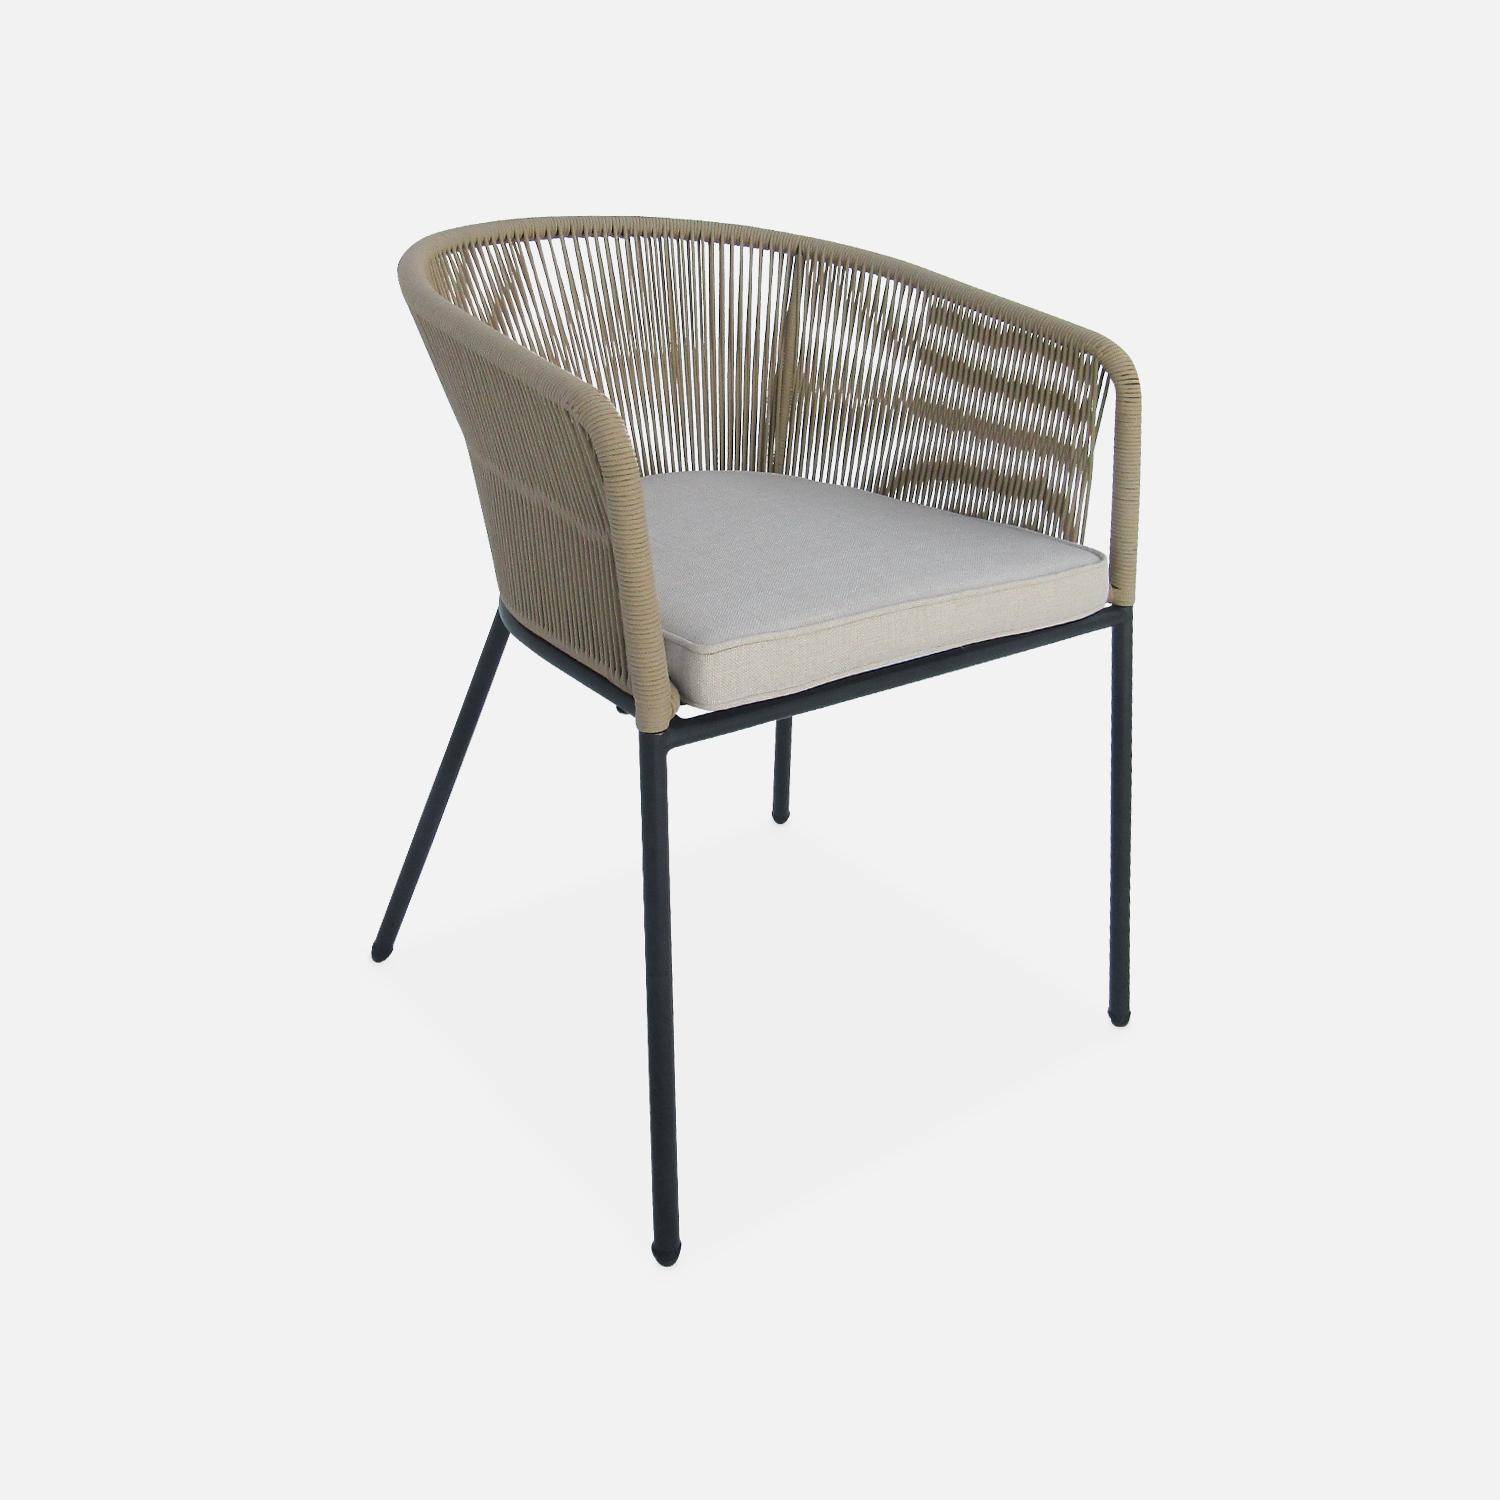 Table à manger bois d'acacia ronde, intérieur / extérieur + 4 fauteuils en corde beige et acier,sweeek,Photo6